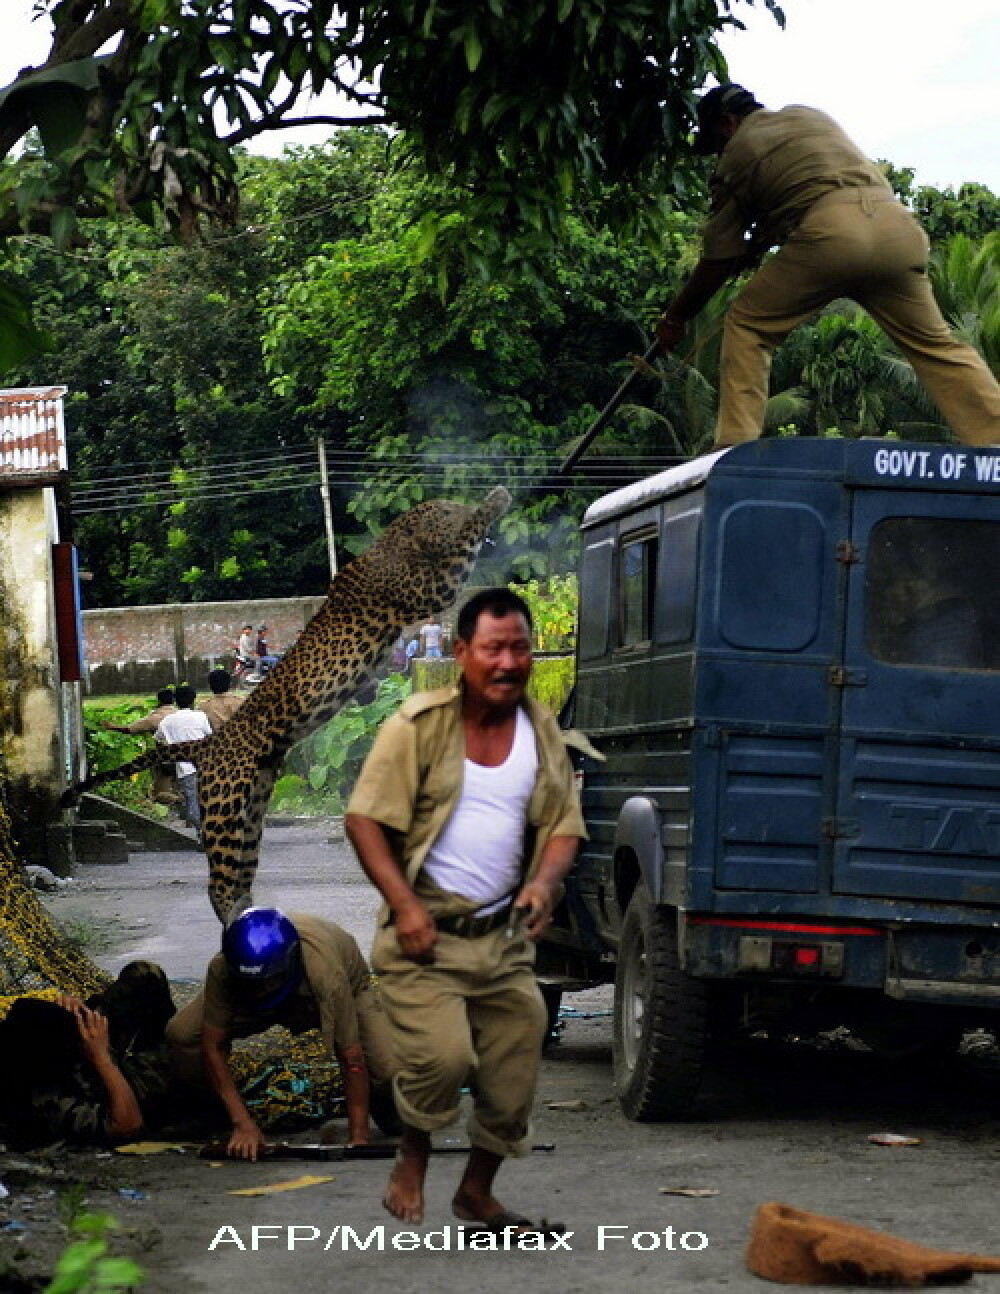 FOTO. Momentul in care un leopard ataca un om. Animalul a mutilat in total 6 persoane - Imaginea 3